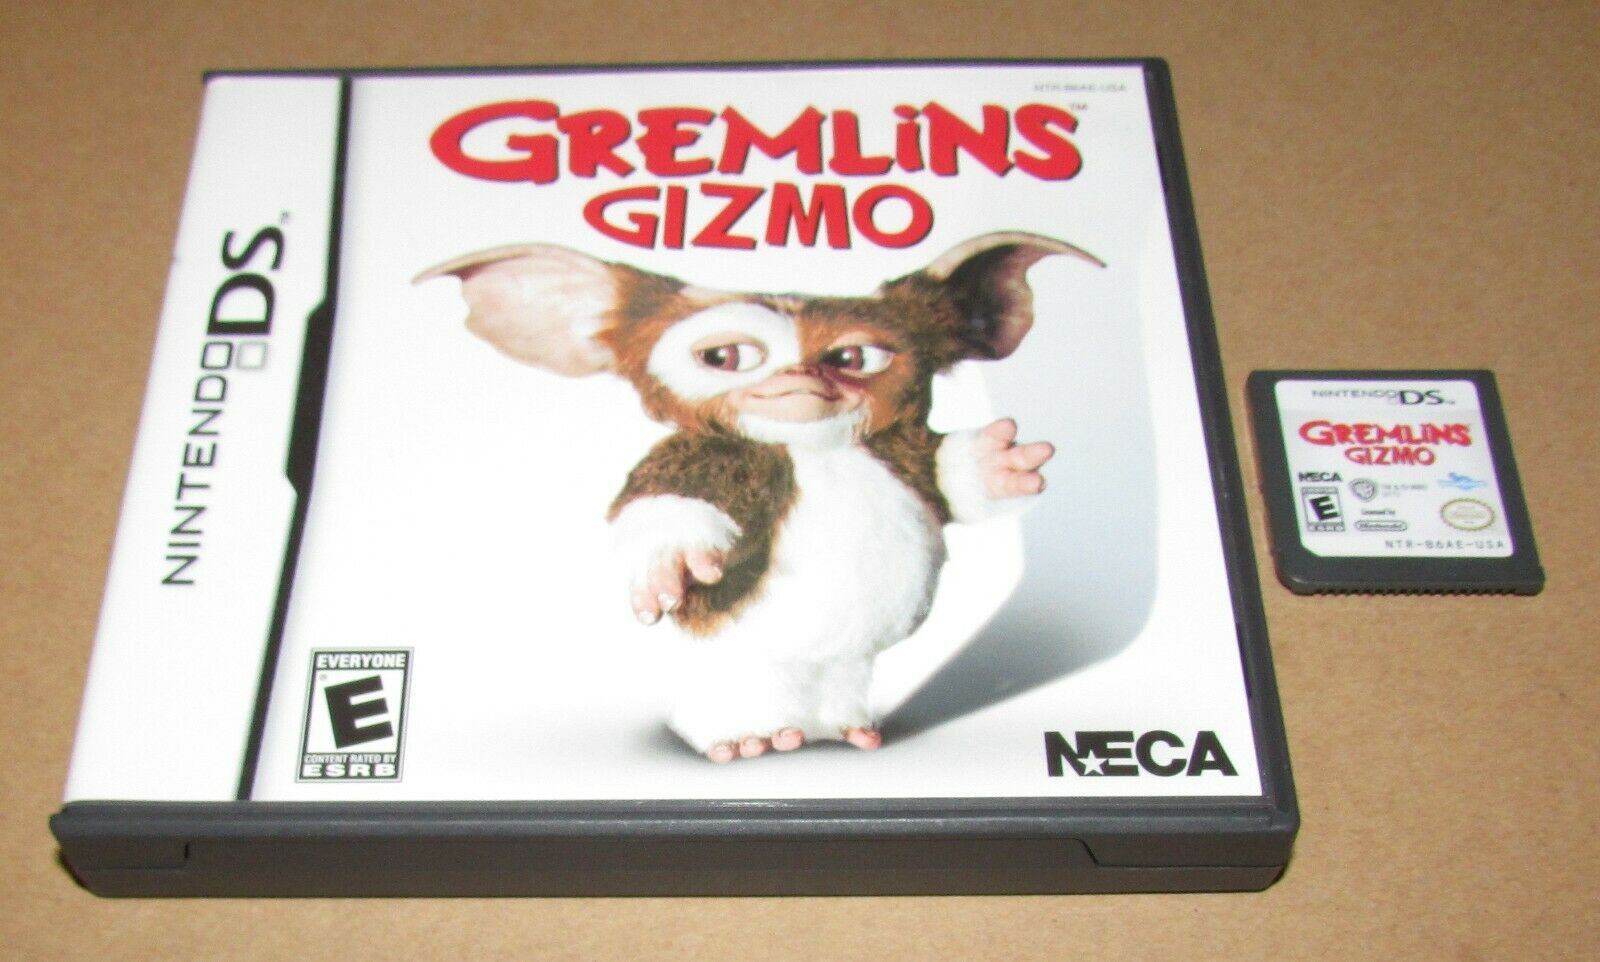 Imagen de caja y cartucho de Gremlins Gizmo de Nintendo DS lanzados en 2011